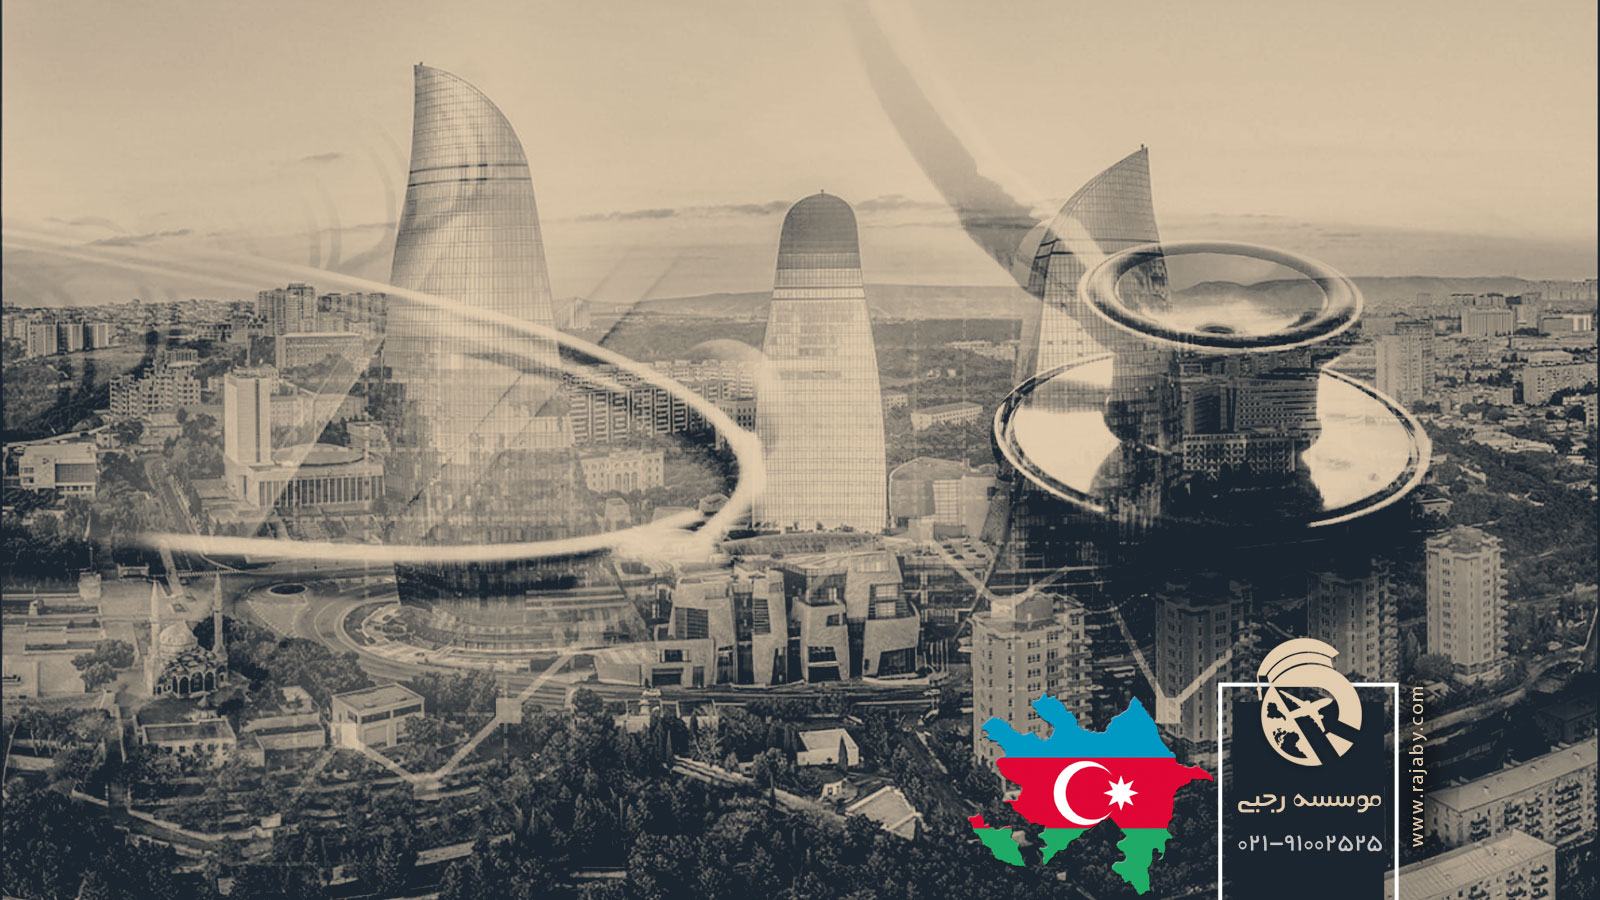 بهداشت و درمان عمومی در آذربایجان